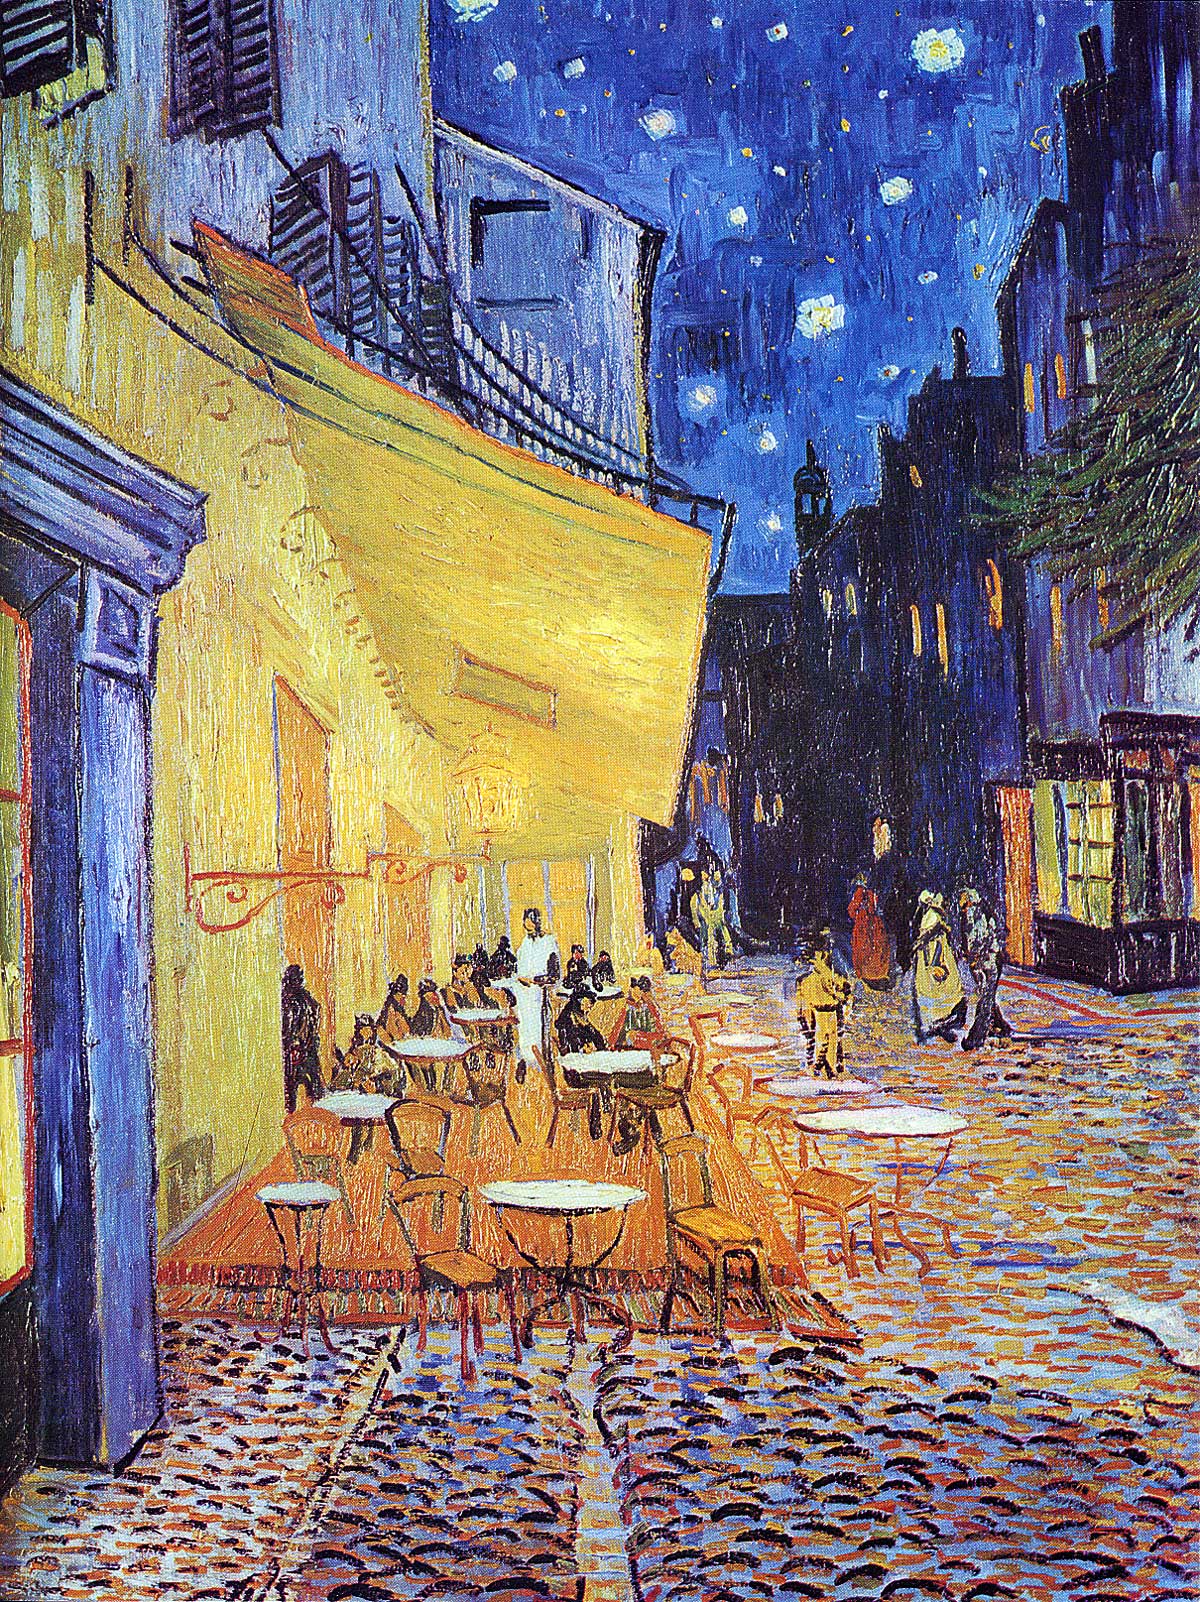 Vincent van Gogh - Terrassen-Café in der Nacht (1888) - Öl auf Leinwand - Rijksmuseum Kröller-Müller, Otterlo (NL)